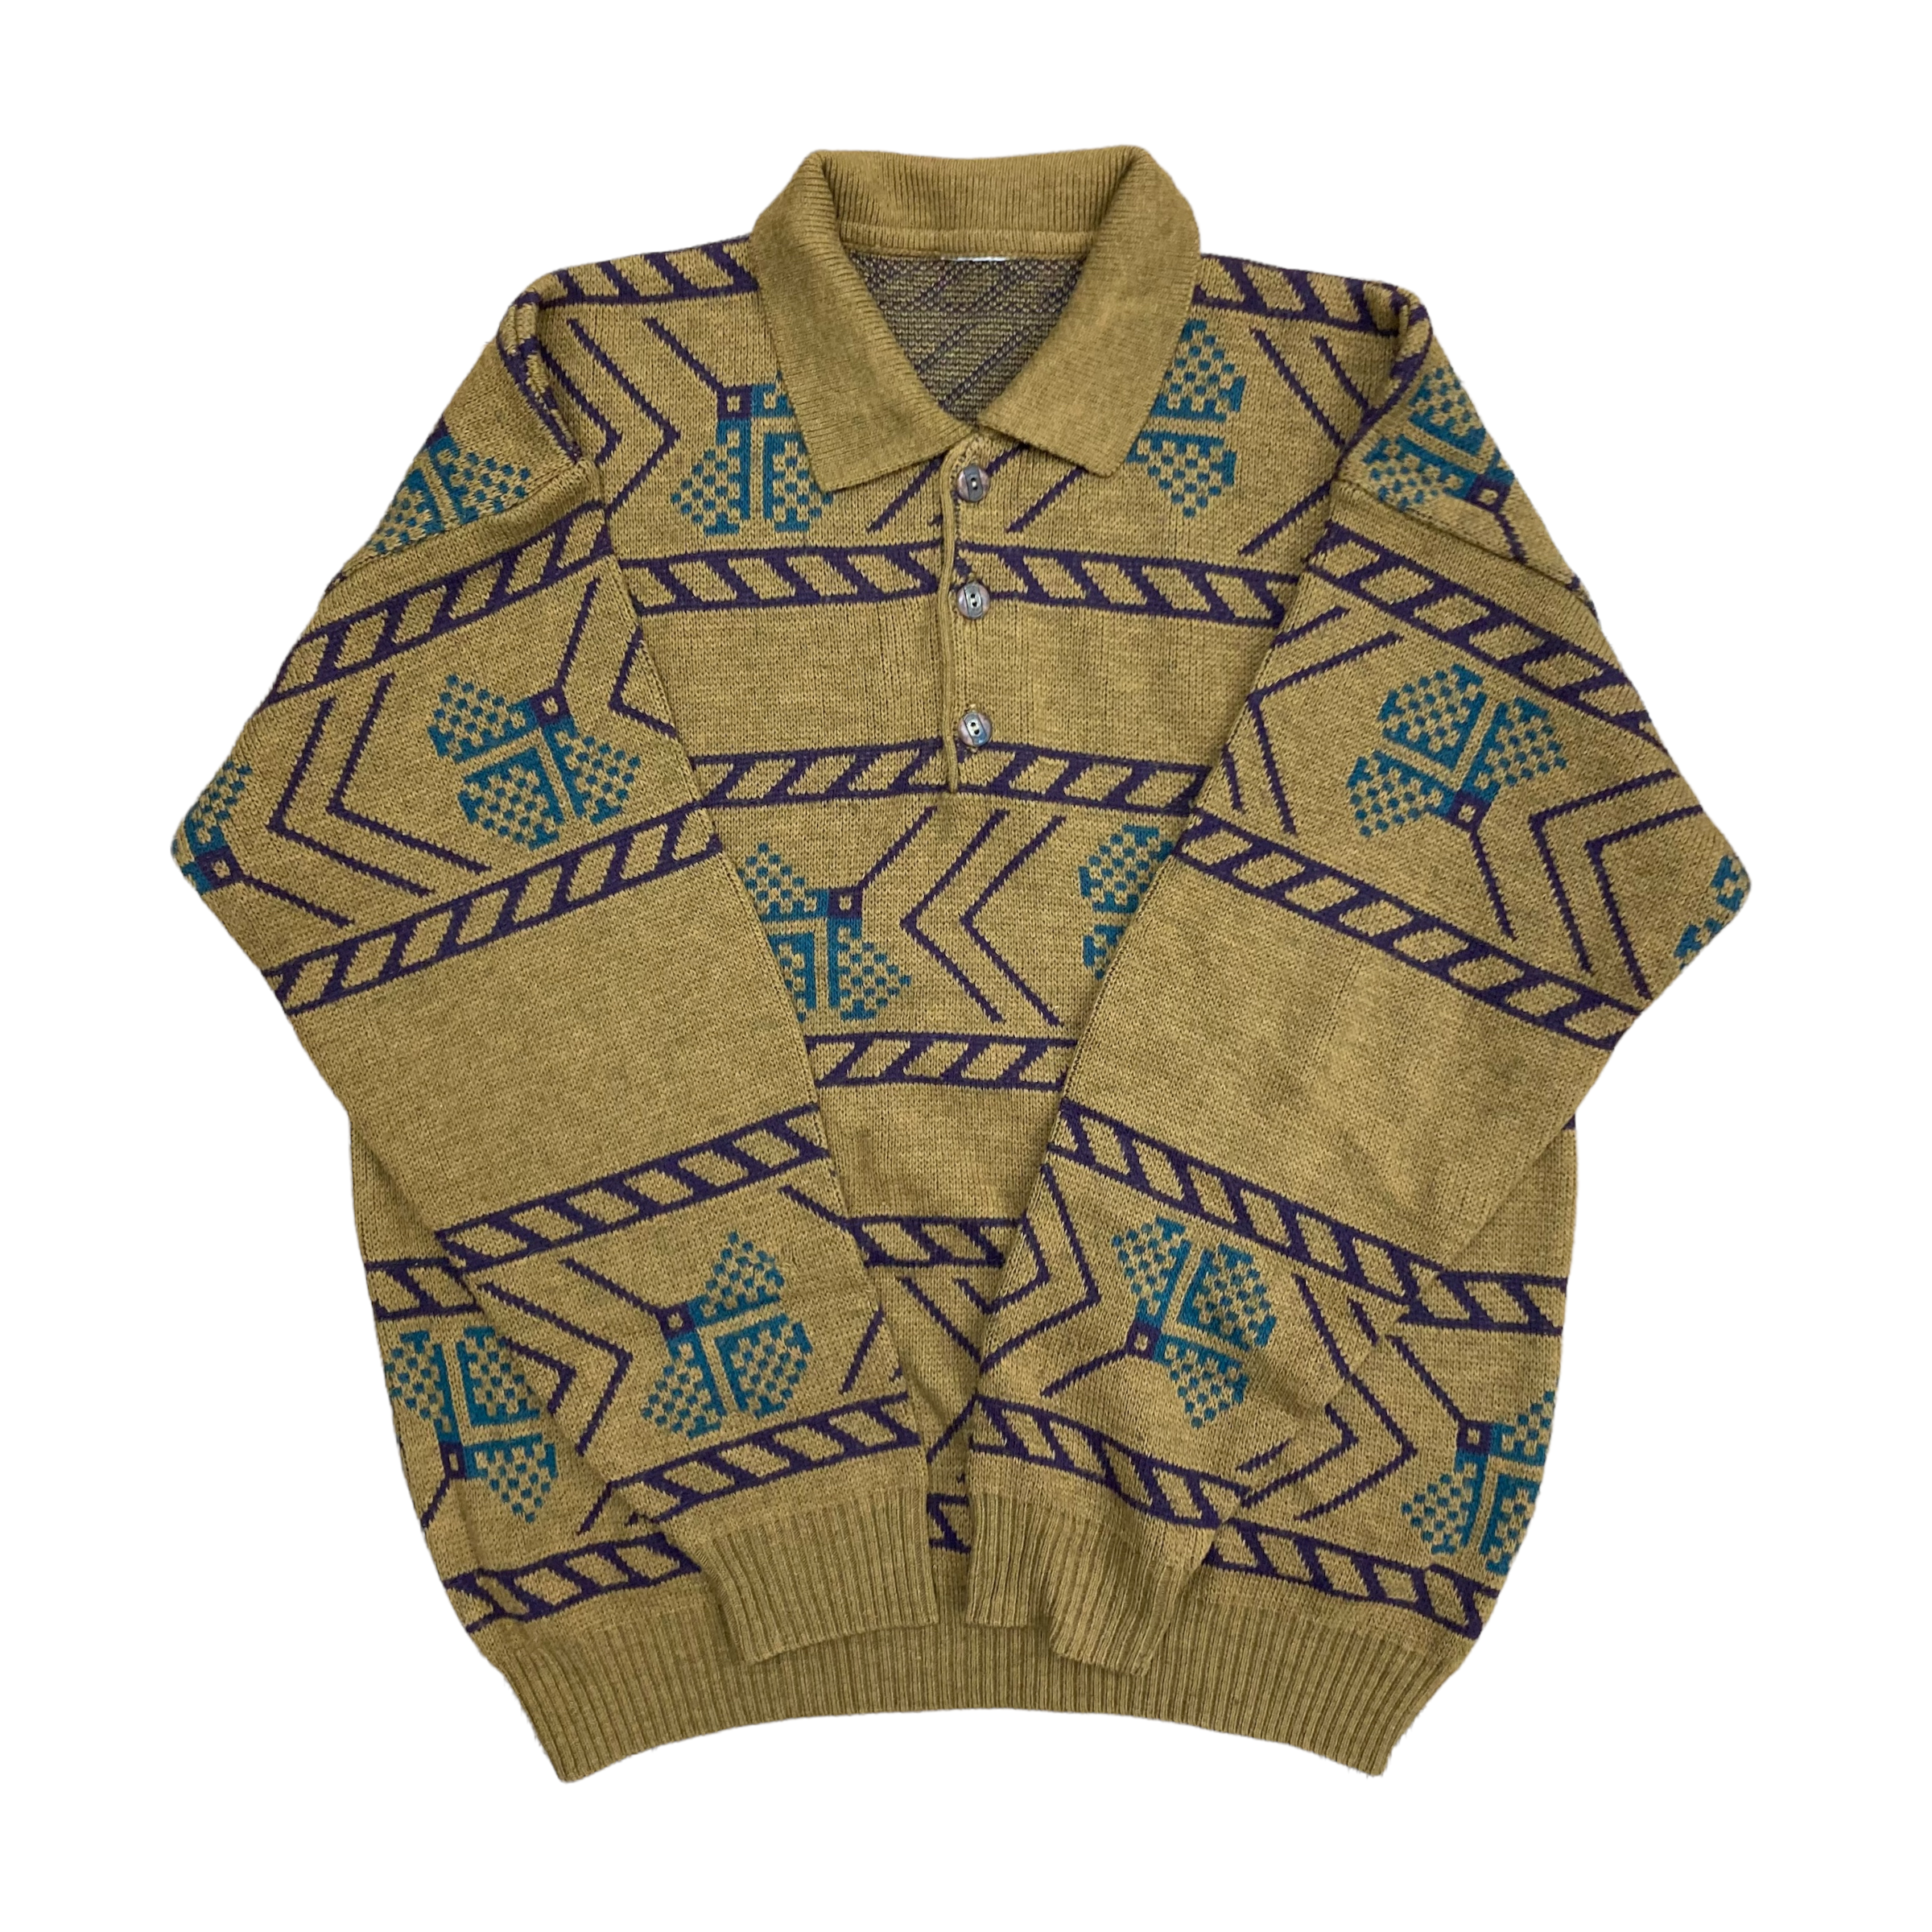 vintage レトロ ニット セーター 幾何学的模様 リーフ柄